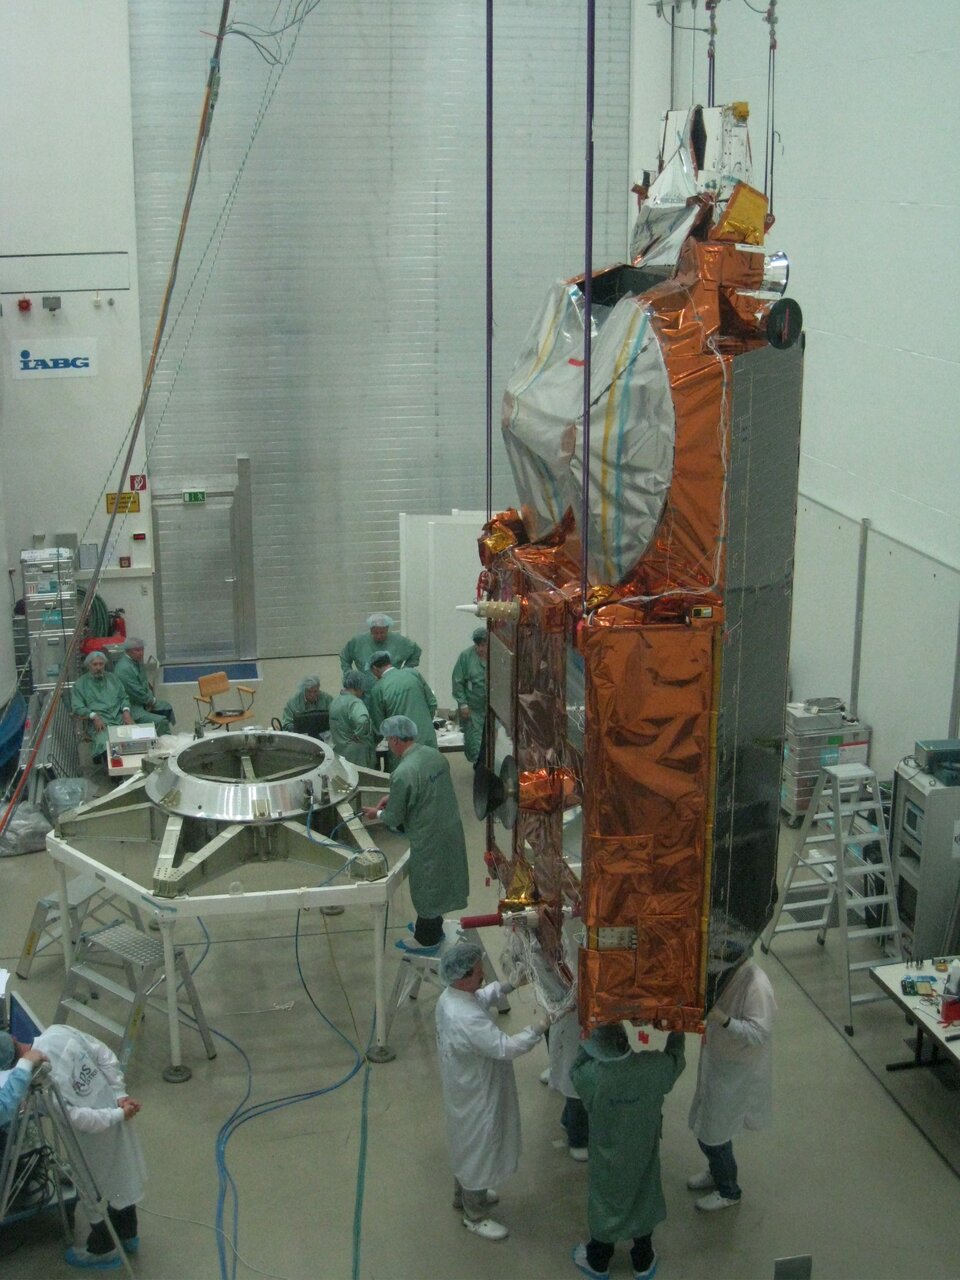 CryoSat-2 at IABG